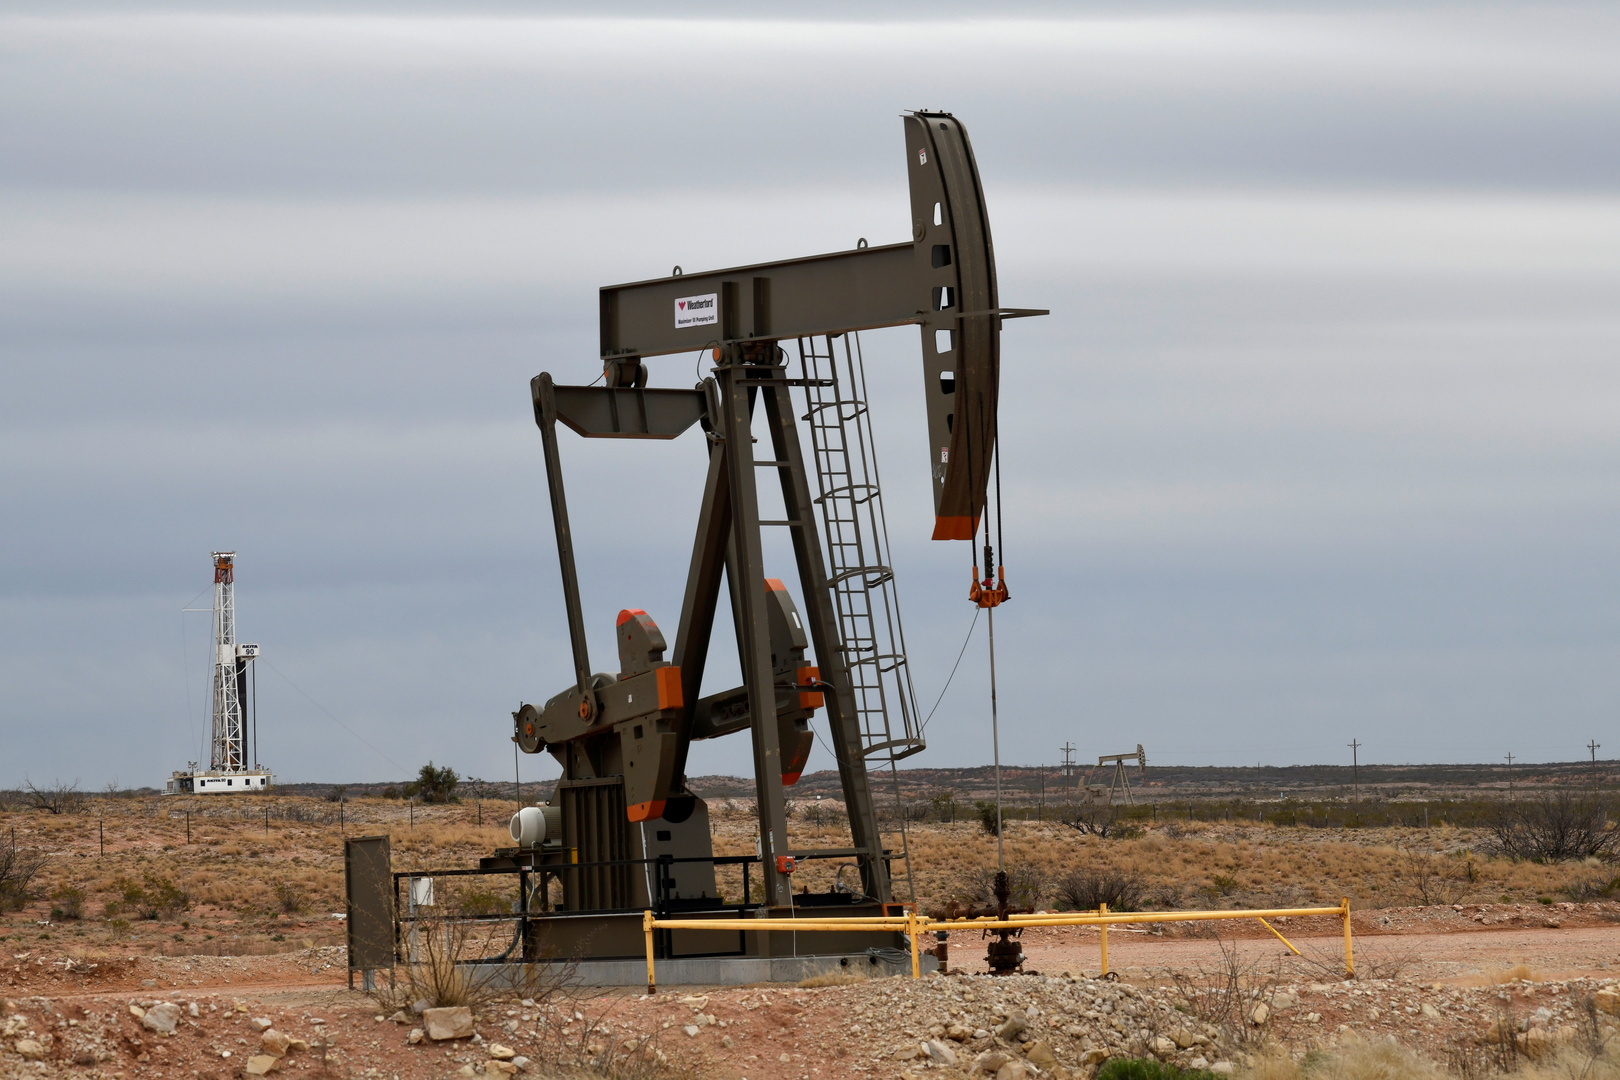 ارتفاع أسعار النفط  في ظل أزمة الطاقة العالمية